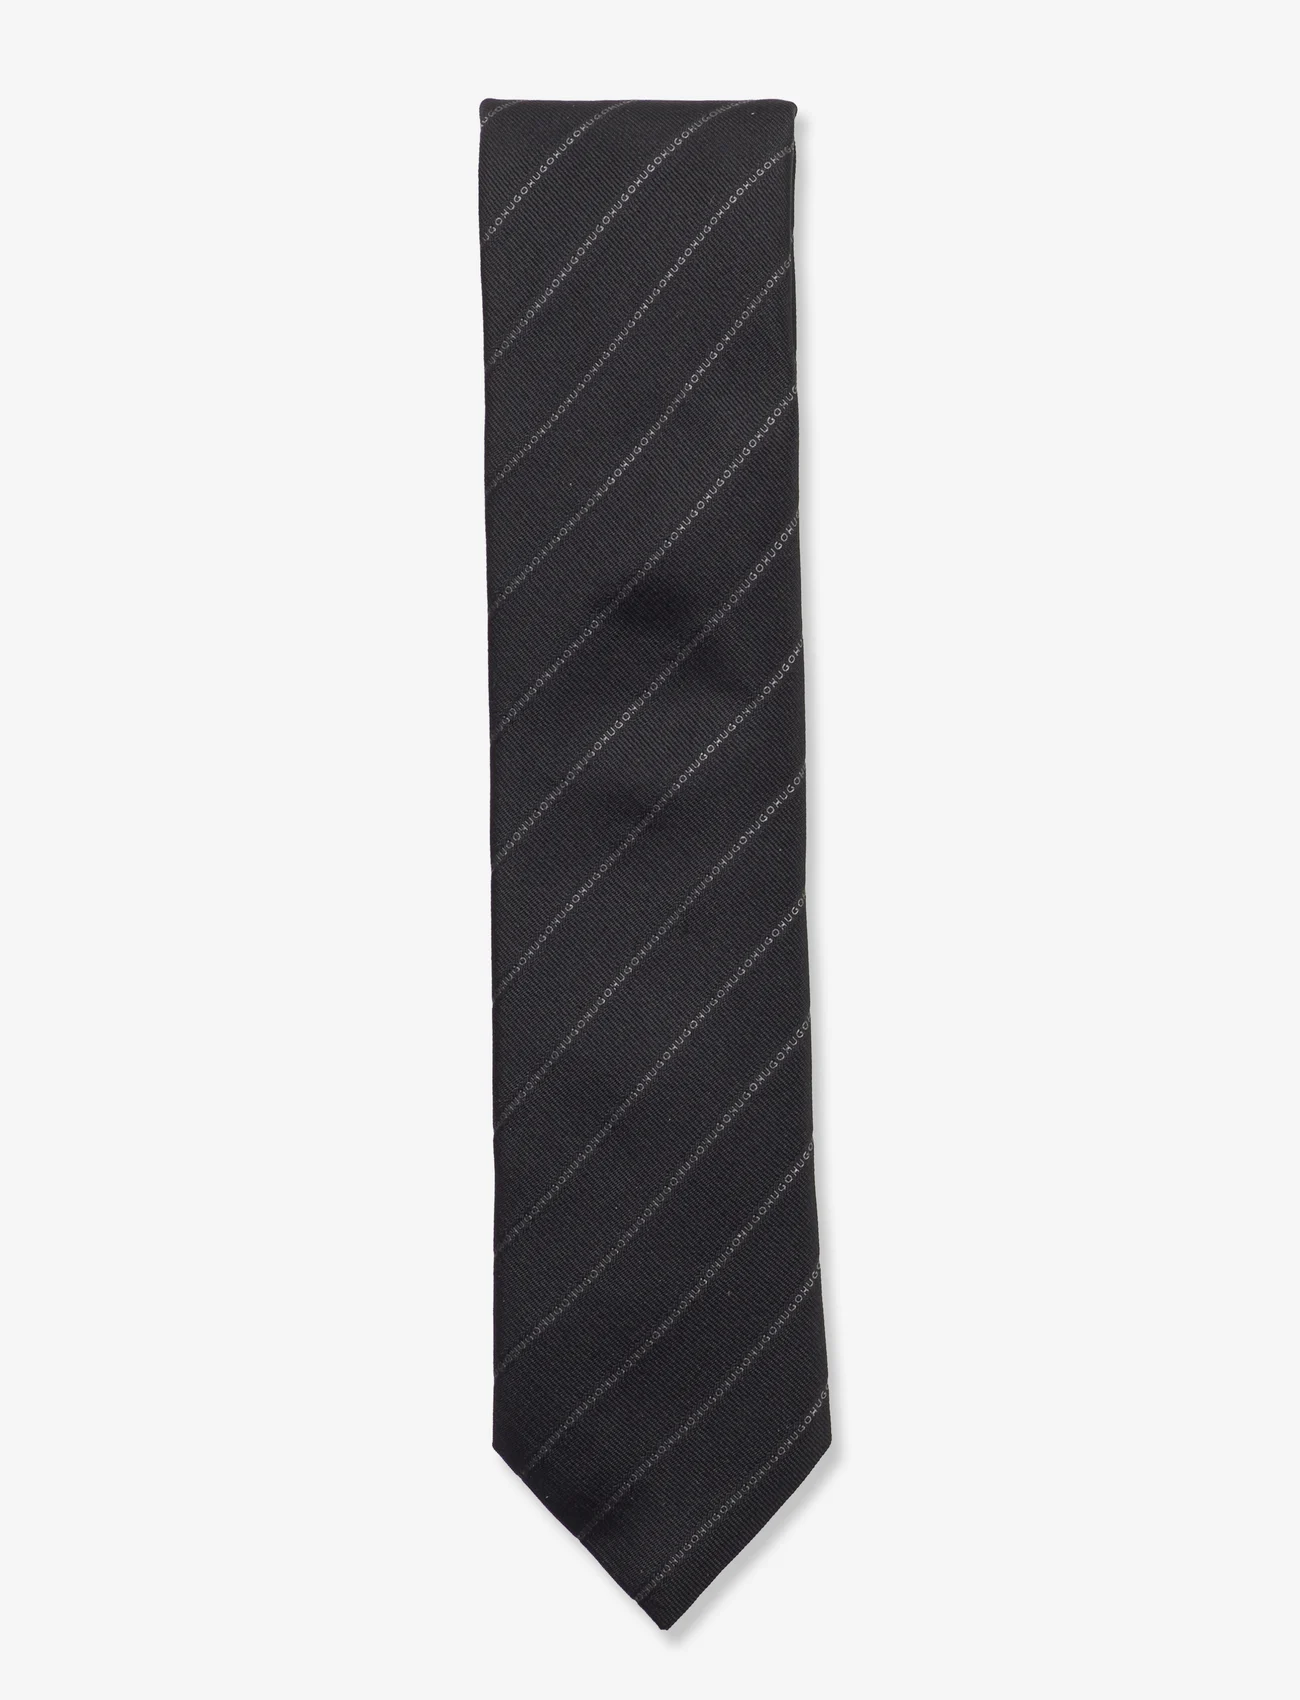 HUGO - Tie cm 6 - ties - black - 0